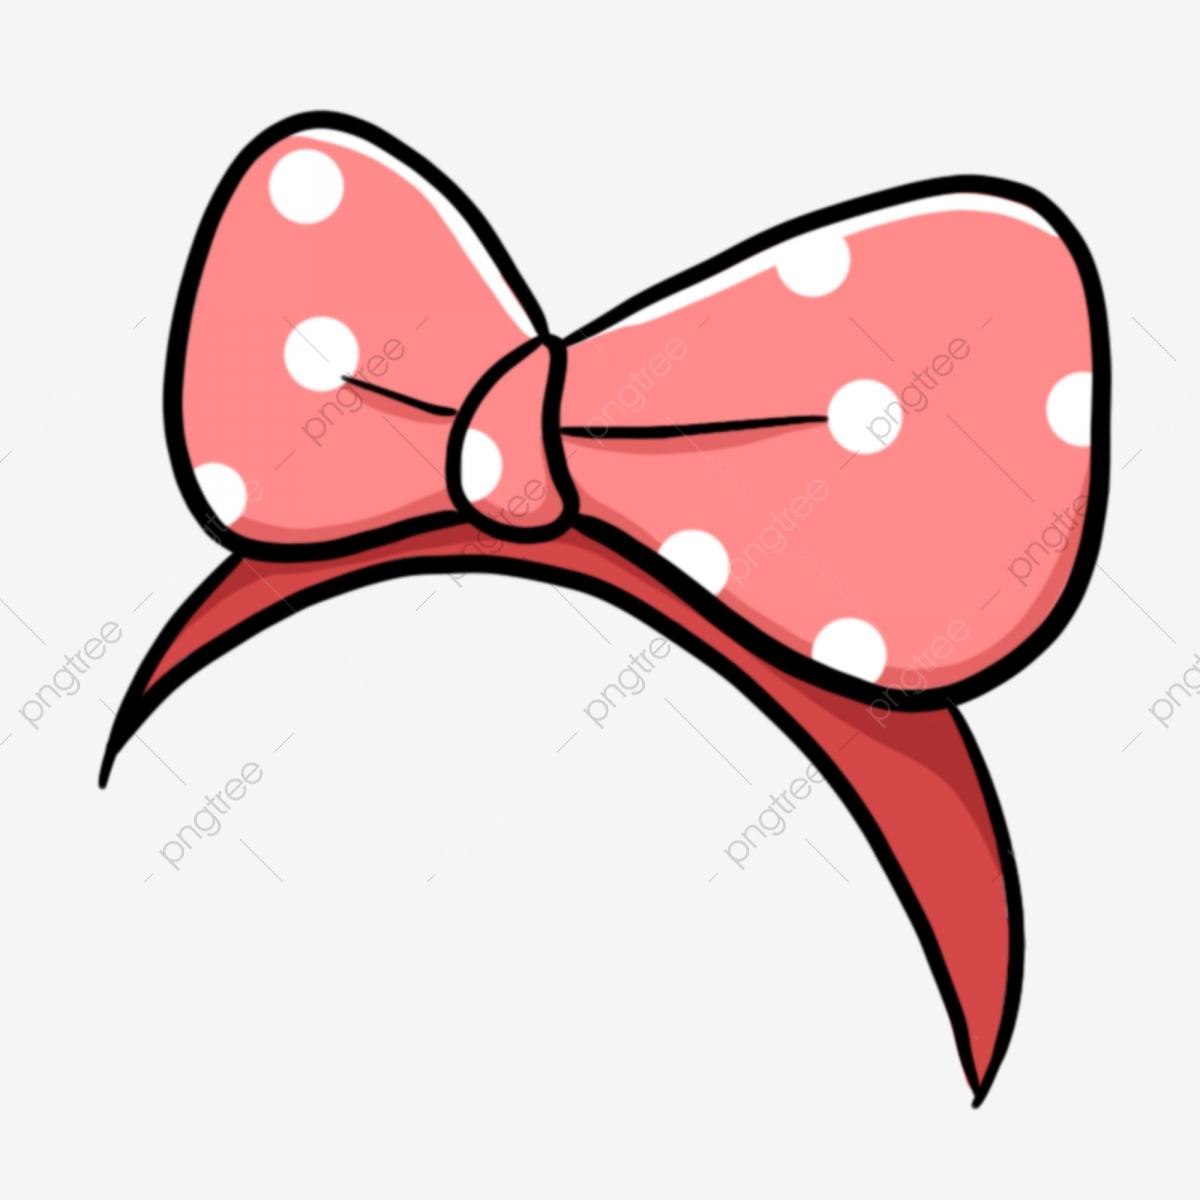 Polka Dot Hair Band Pink Hair Band Cartoon Hair Band Pink Bow, Bow.